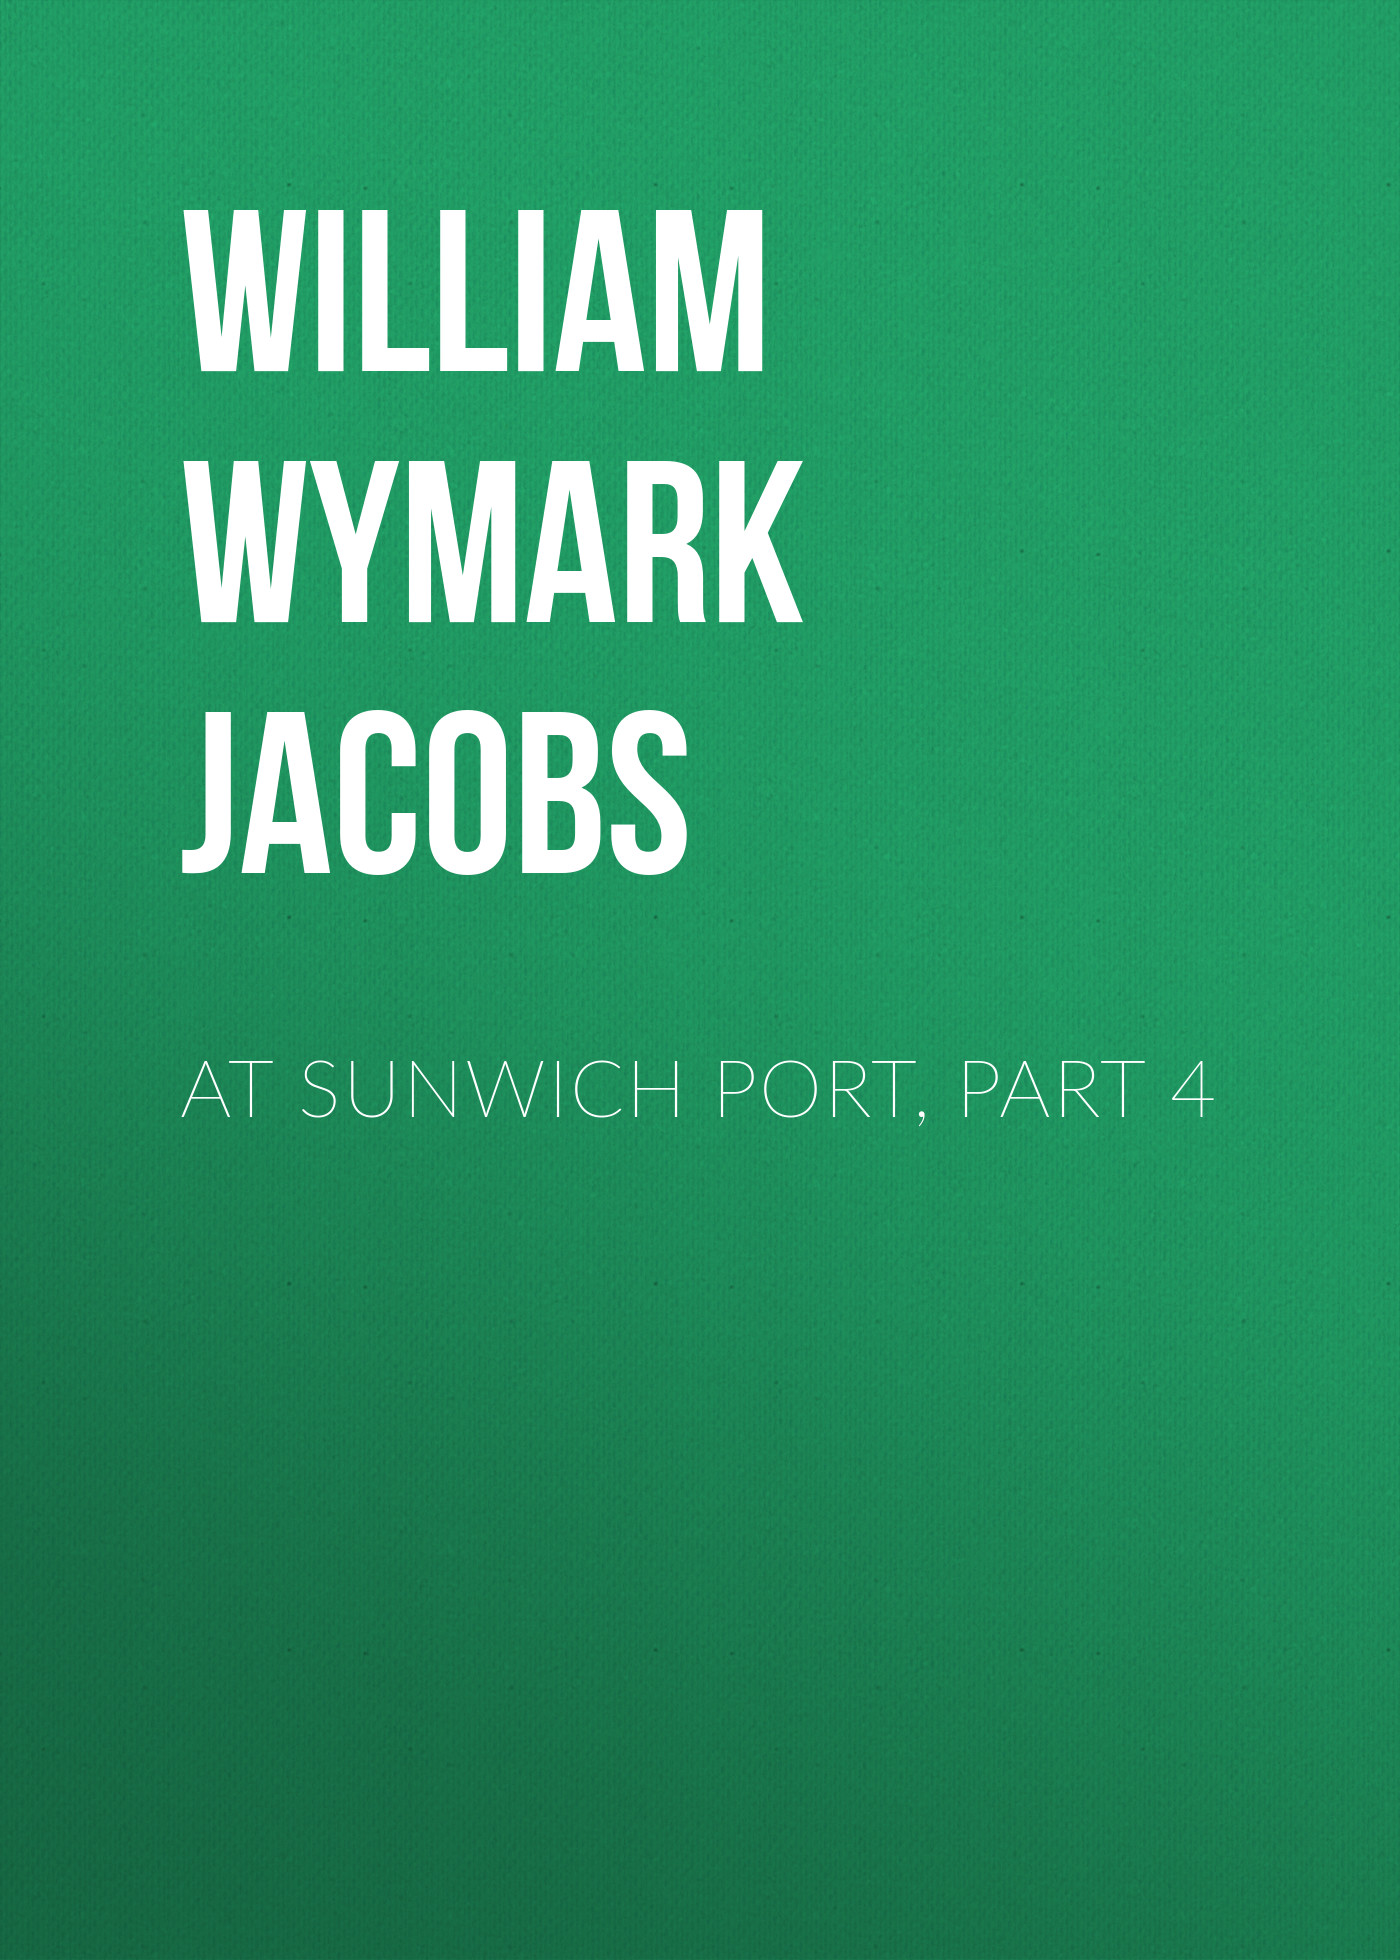 Книга At Sunwich Port, Part 4 из серии , созданная William Wymark Jacobs, может относится к жанру Зарубежная классика, Зарубежная старинная литература. Стоимость электронной книги At Sunwich Port, Part 4 с идентификатором 34844022 составляет 0 руб.